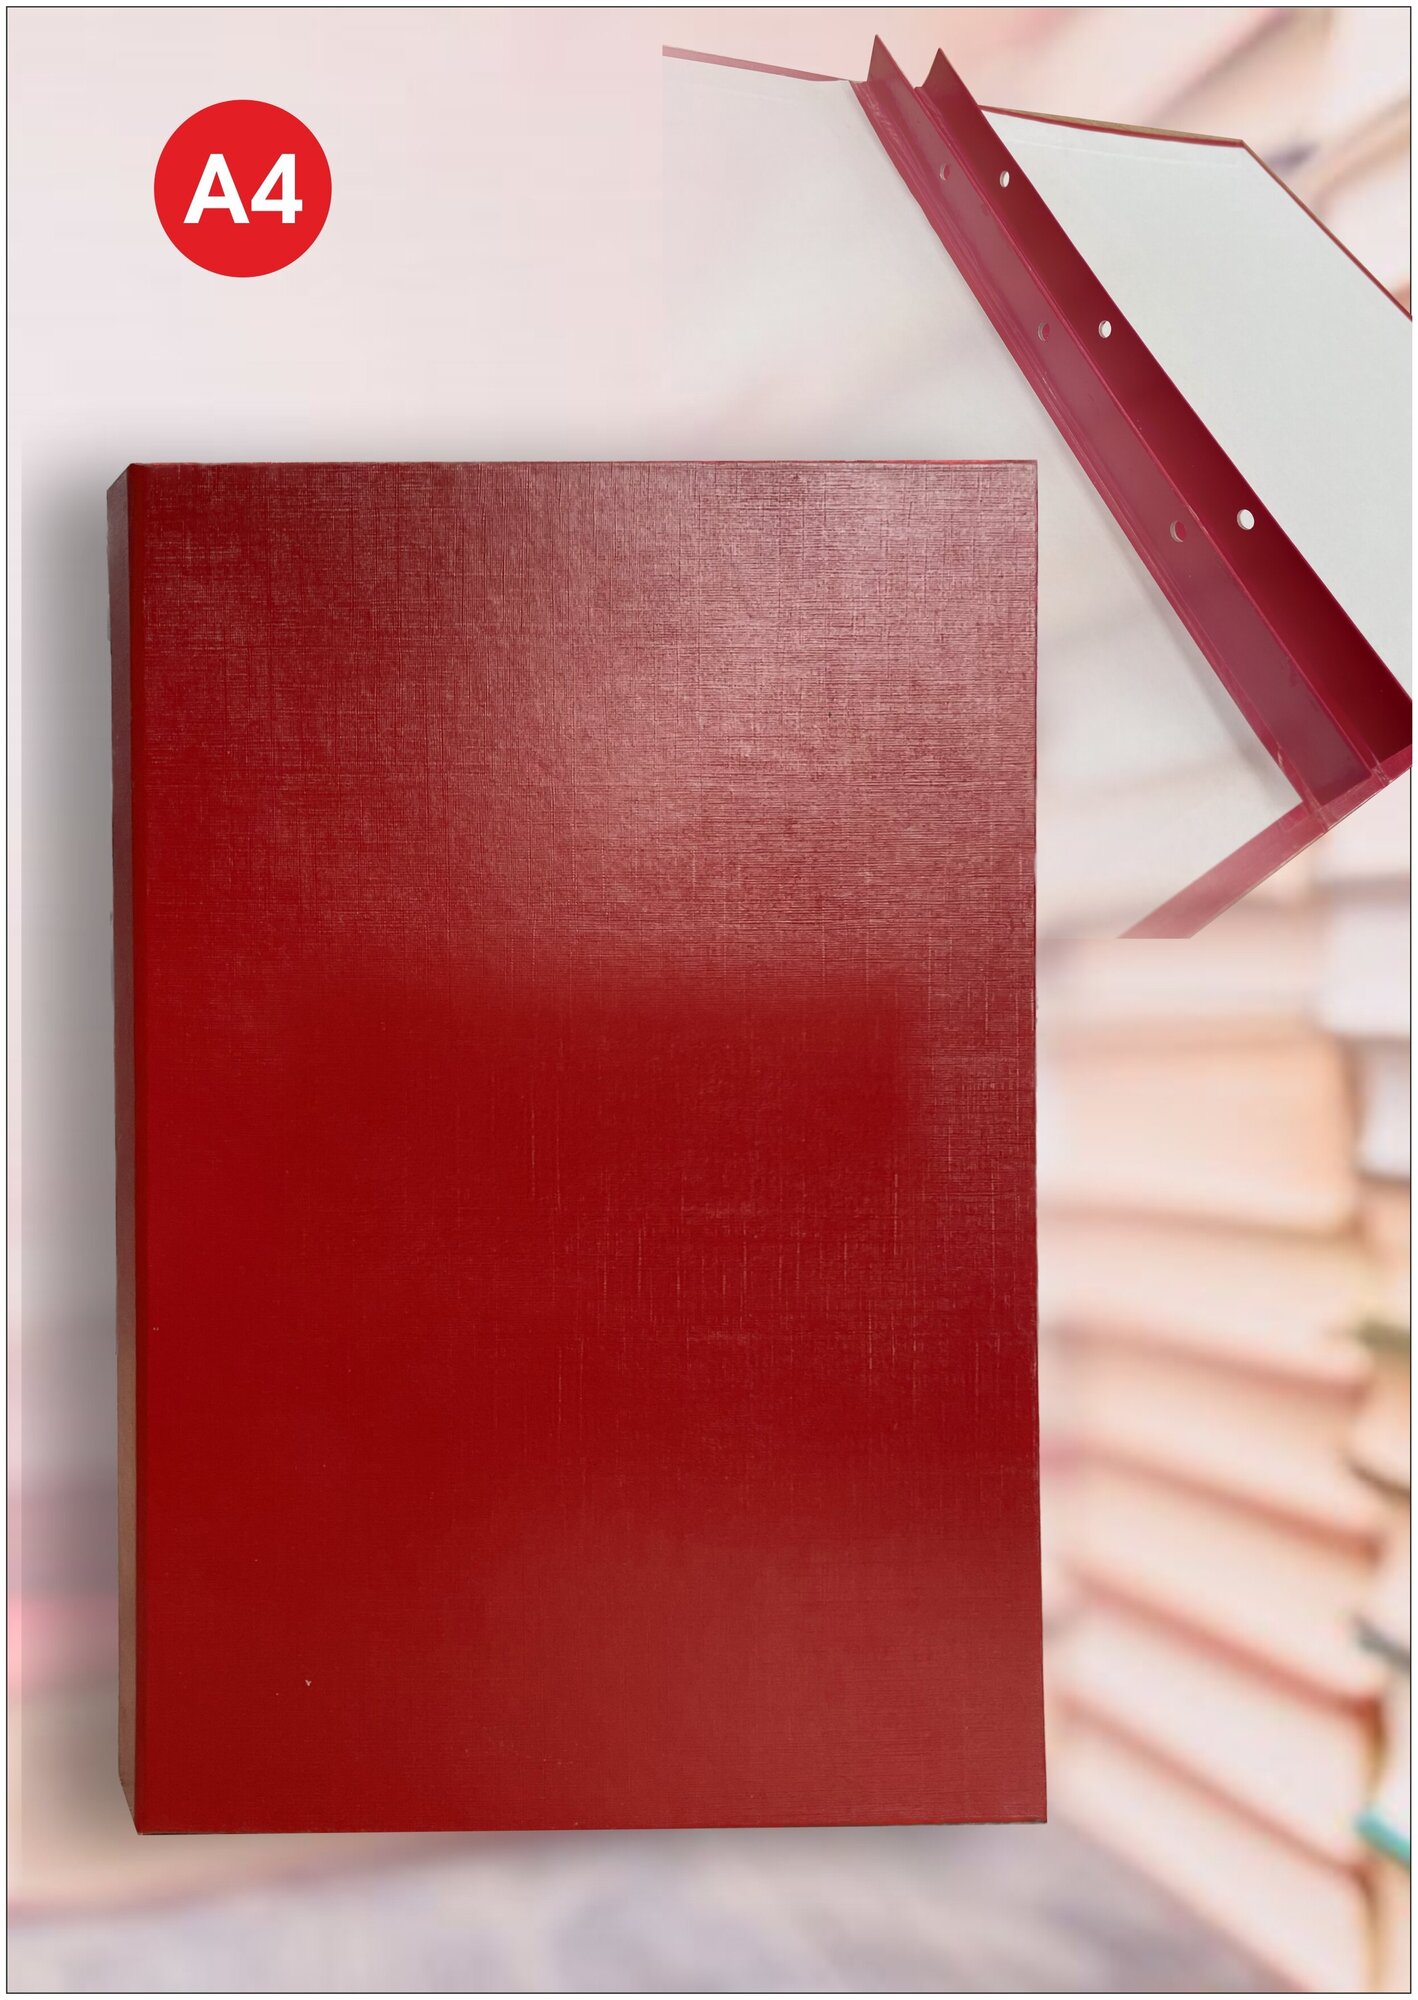 Красная папка без надписей для вкр, дипломных работ и проектов, магистерских диссертаций